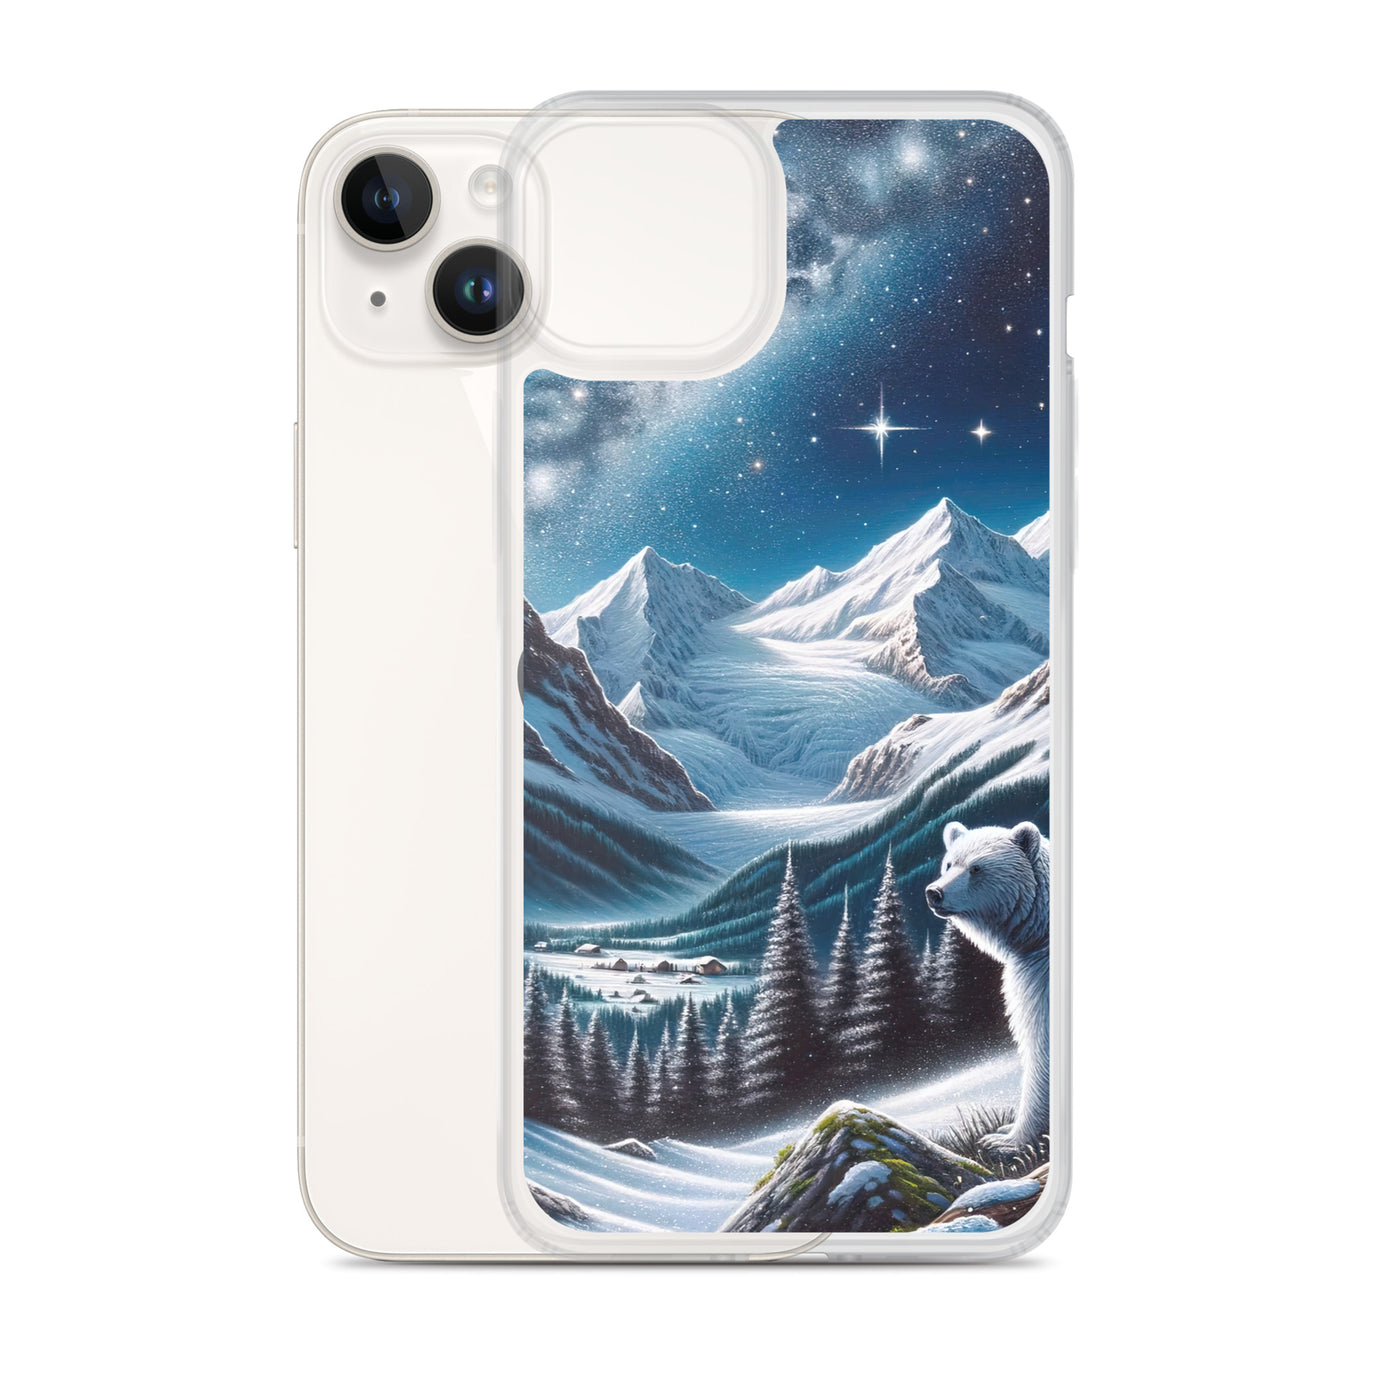 Sternennacht und Eisbär: Acrylgemälde mit Milchstraße, Alpen und schneebedeckte Gipfel - iPhone Schutzhülle (durchsichtig) camping xxx yyy zzz